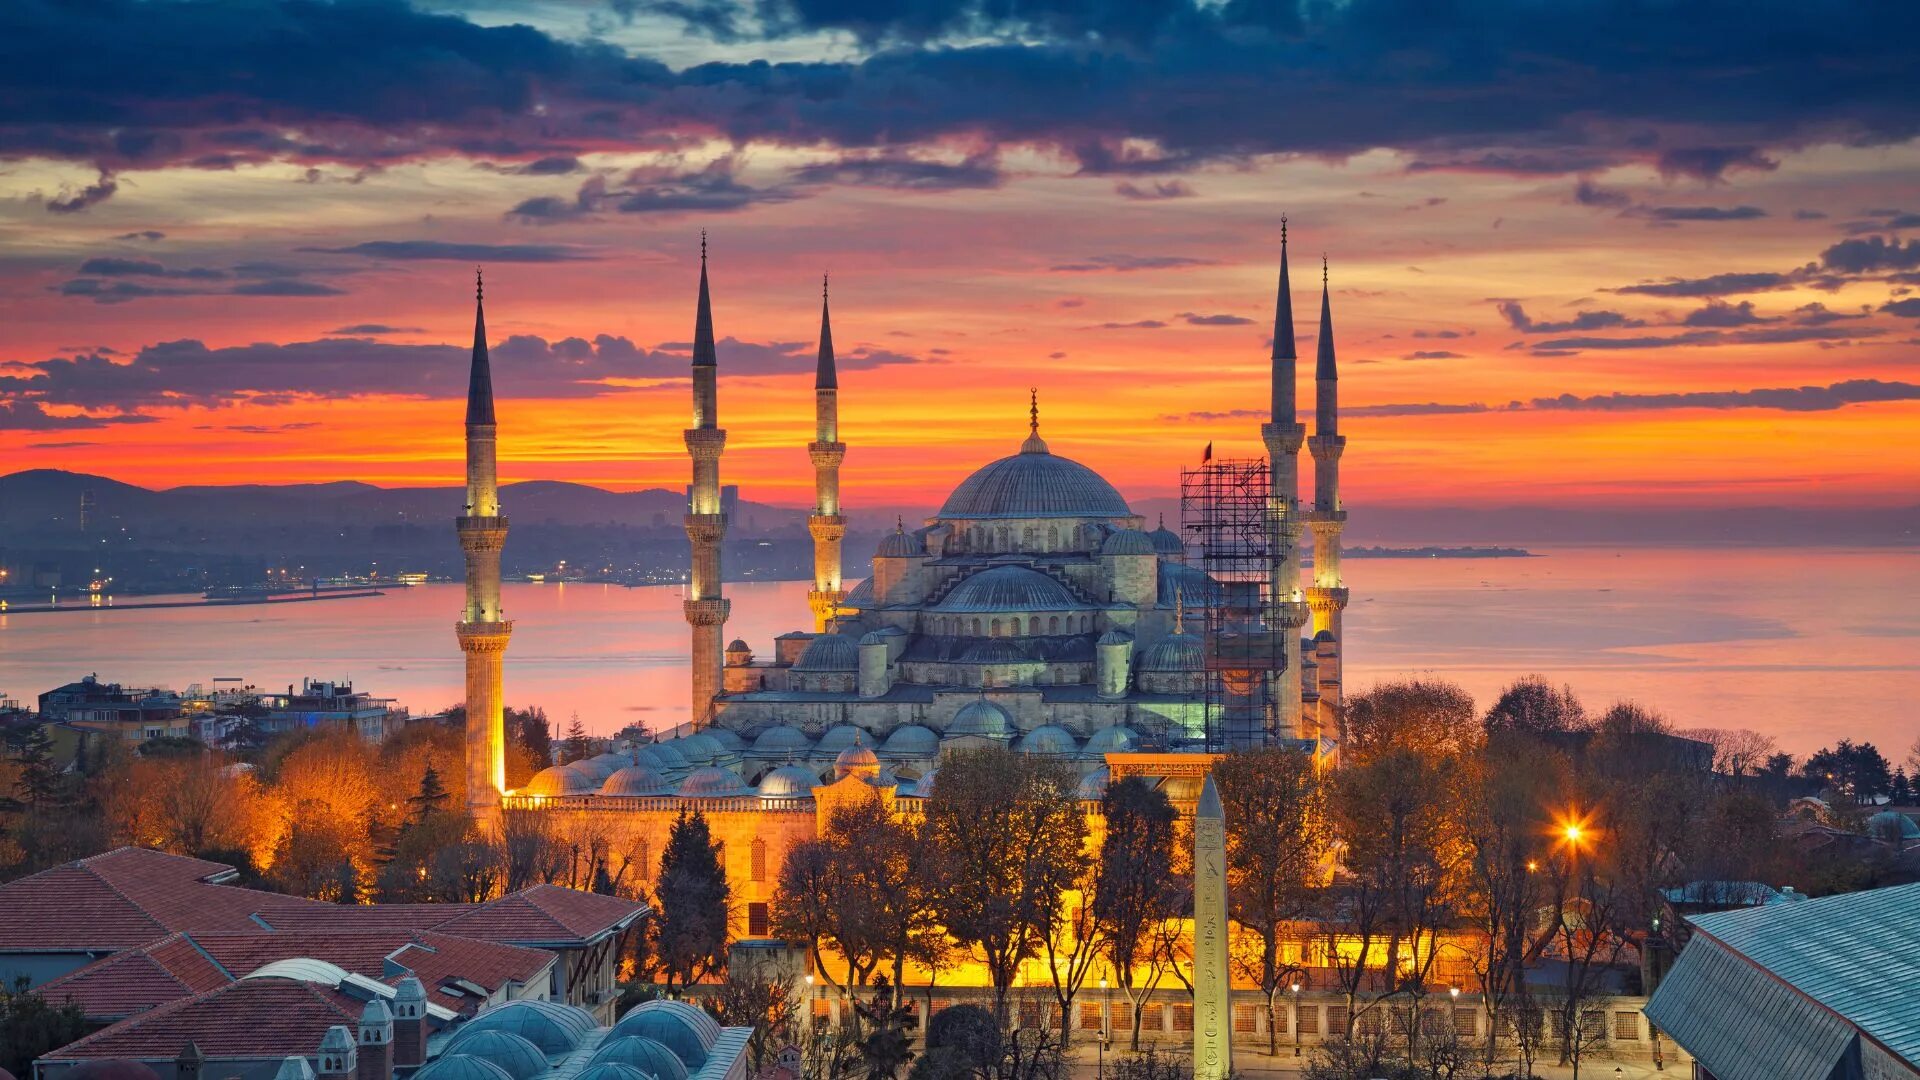 Разница со стамбулом. Стамбул старый город Султанахмет. Достопримечательности Стамбула 2022. Стамбул. Голубая мечеть.